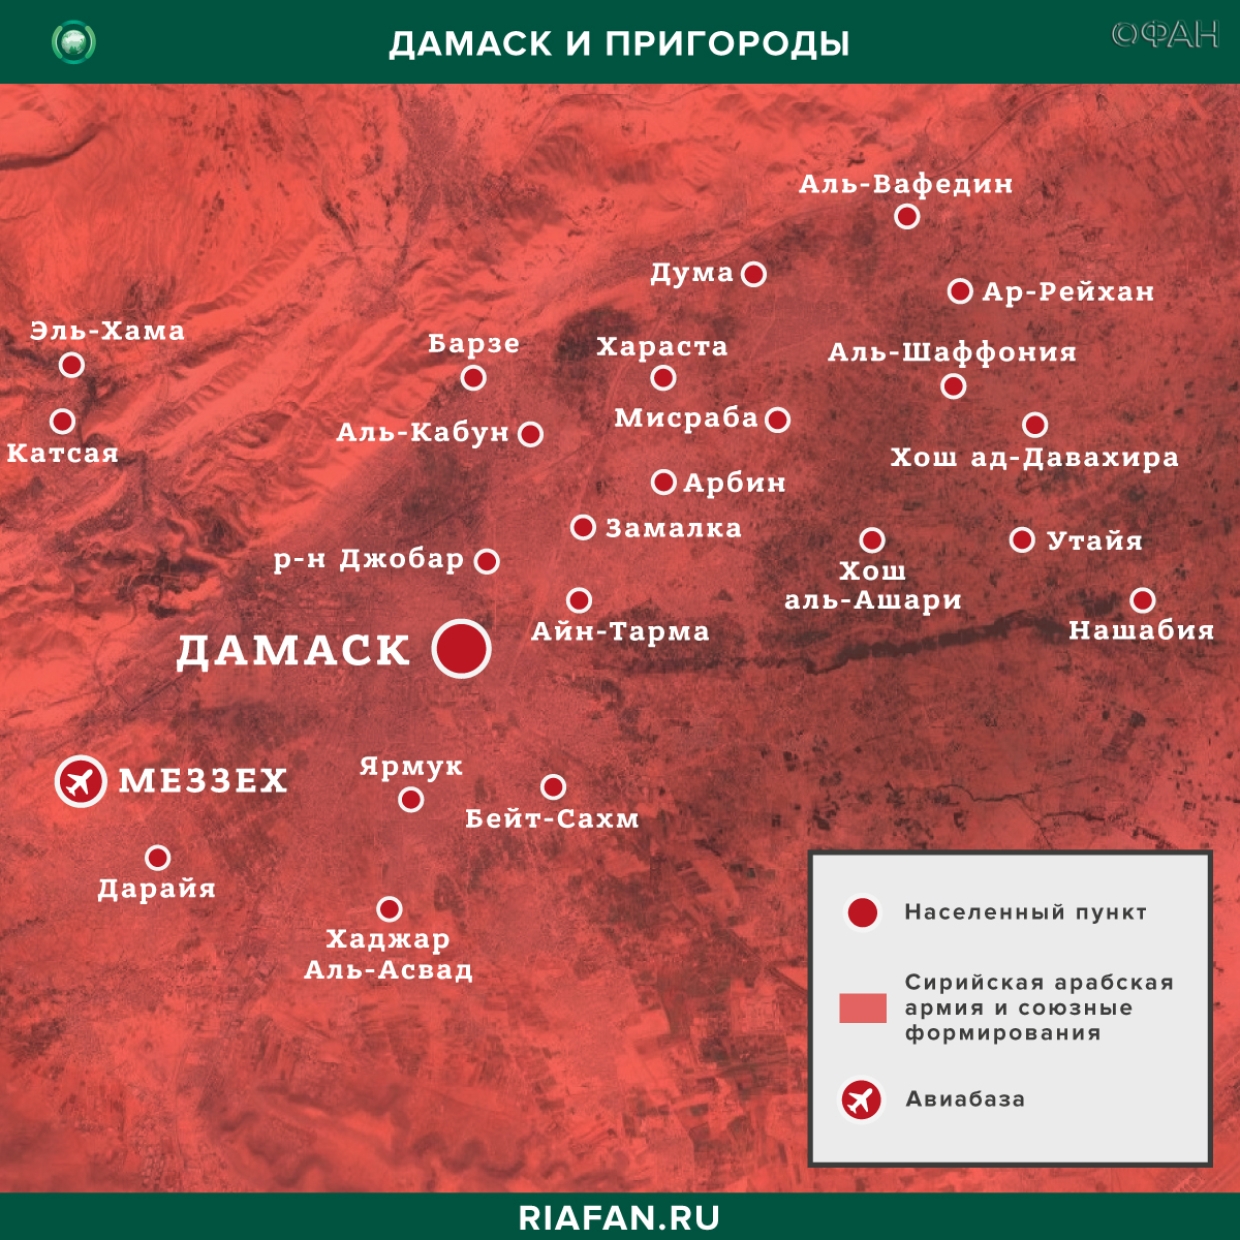 Resultados diarios de Siria para 27 Febrero 06.00: взрыв в Дамаске, сирийская армия освободила свыше 30 поселений Идлиба